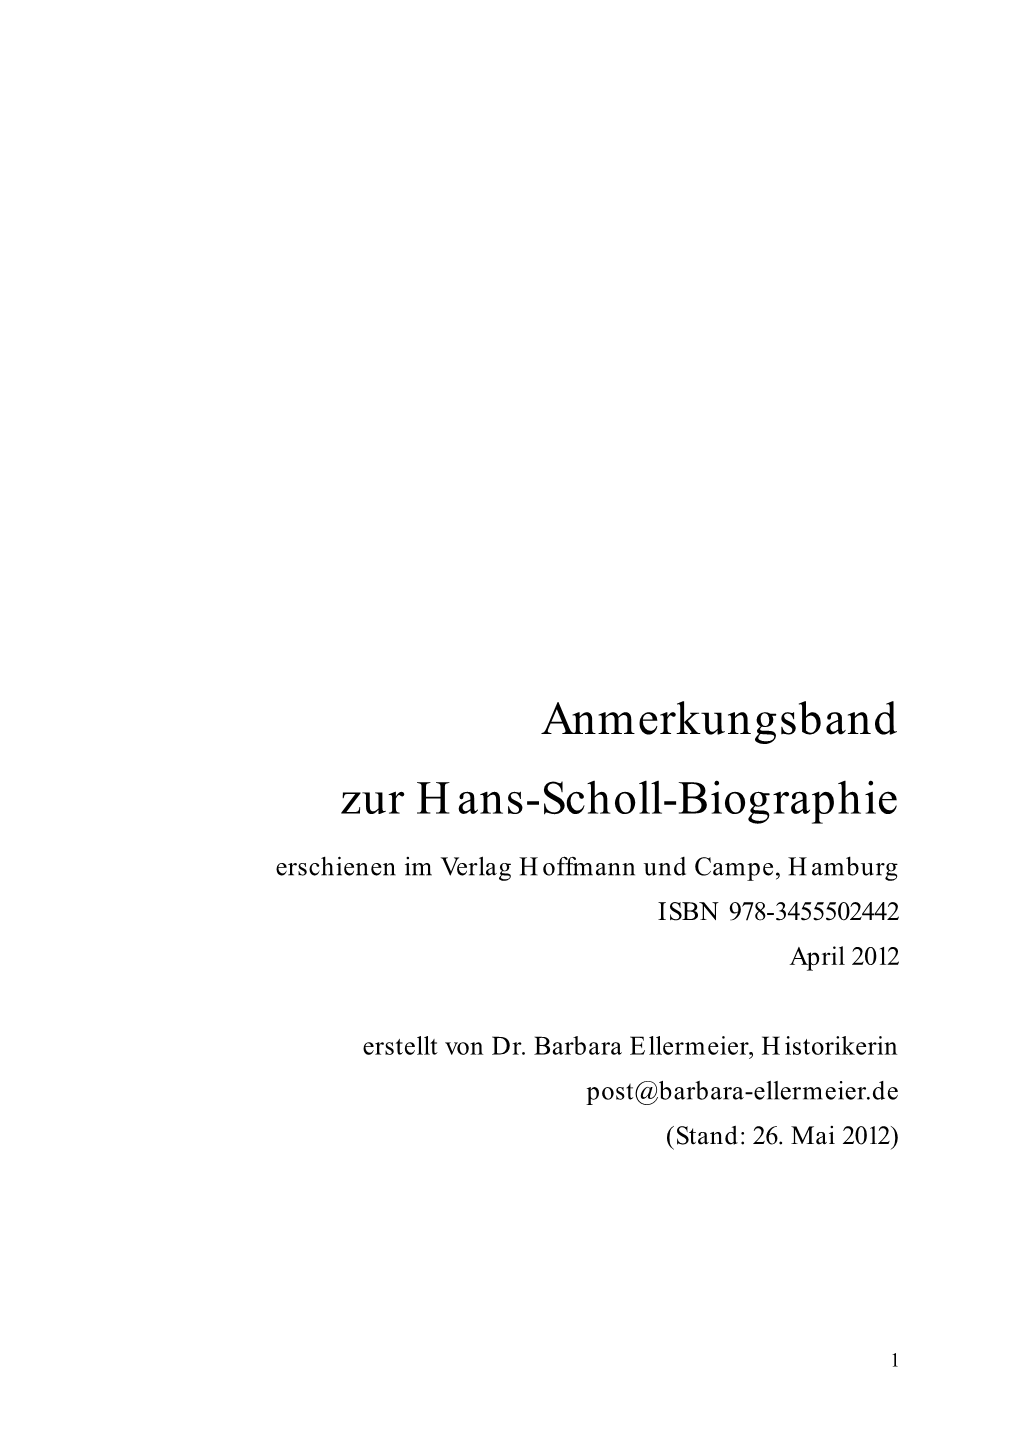 Anmerkungsband Zur Hans-Scholl-Biographie Erschienen Im Verlag Hoffmann Und Campe, Hamburg ISBN 978-3455502442 April 2012